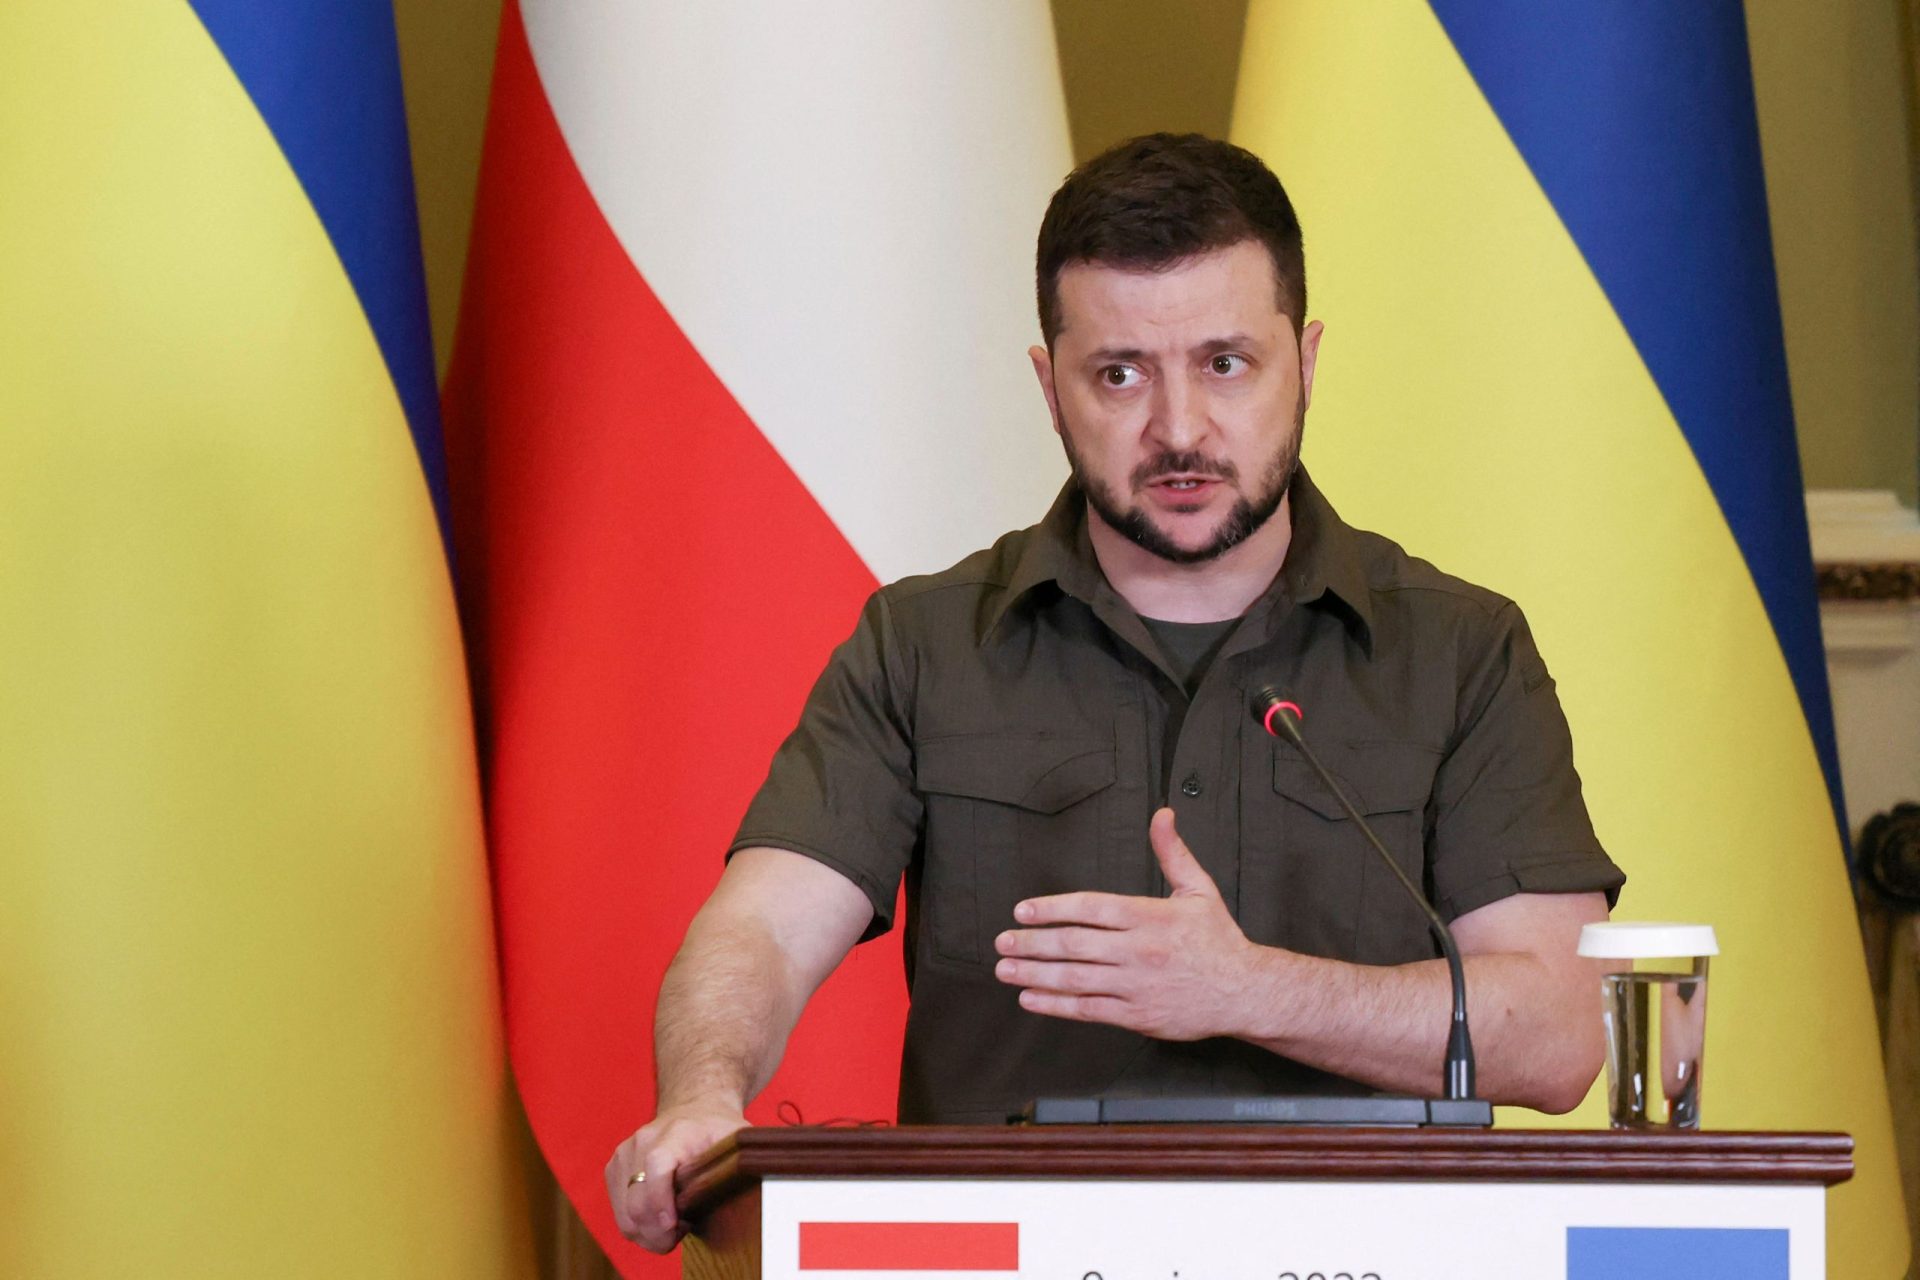 Míssil que atingiu Polónia não era ucraniano, diz Zelensky